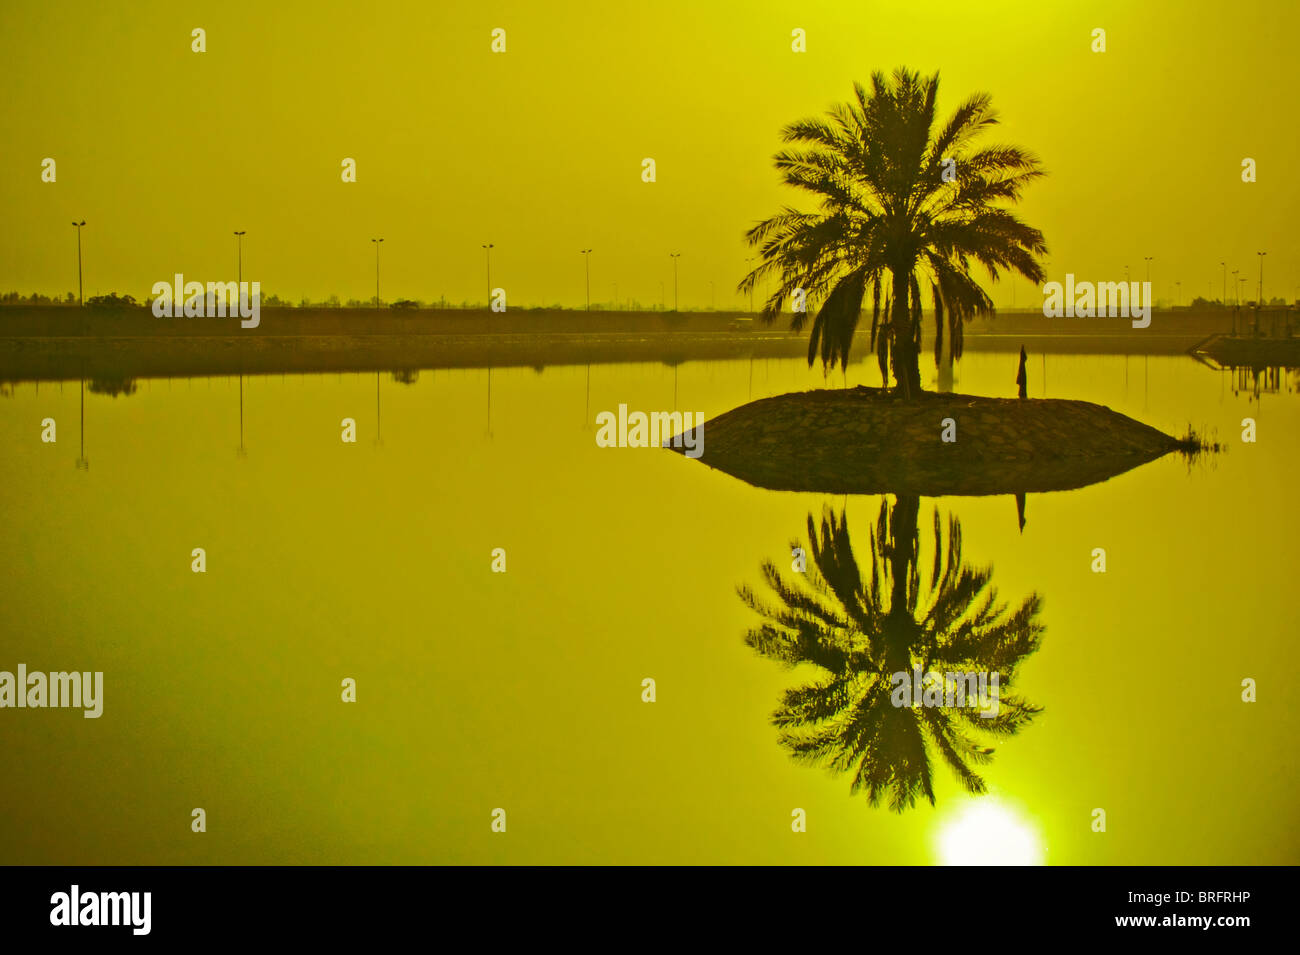 Eine Palme in den Nahen Osten vor einem kleinen Körper des Wassers. Einen künstlichen See in Bagdad, Irak in der Nähe von Saddams Palast. Stockfoto